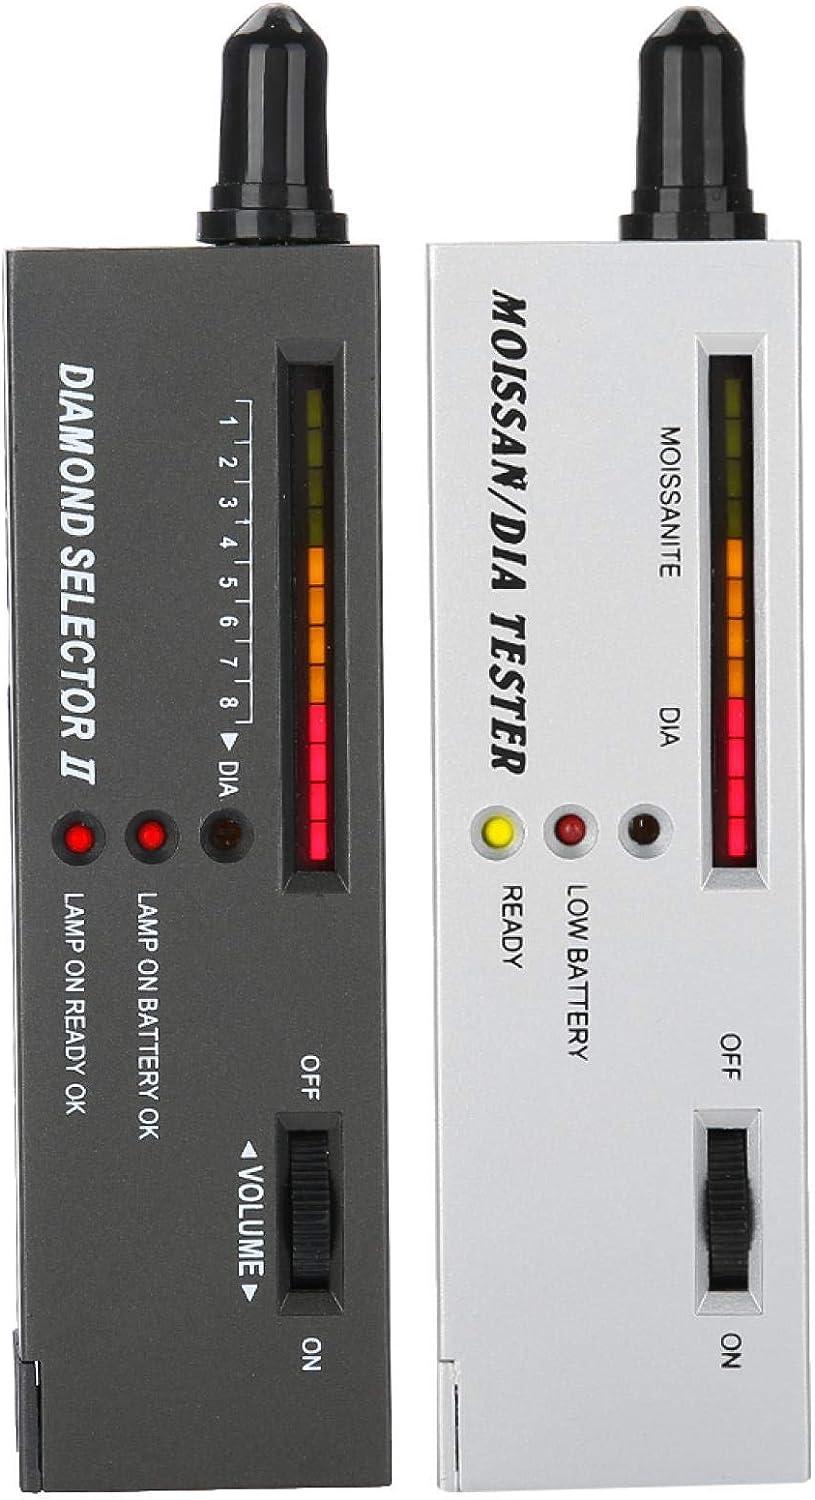 Brrnoo Moissanite Tester, Gemstone Tester,Portable LED Audio